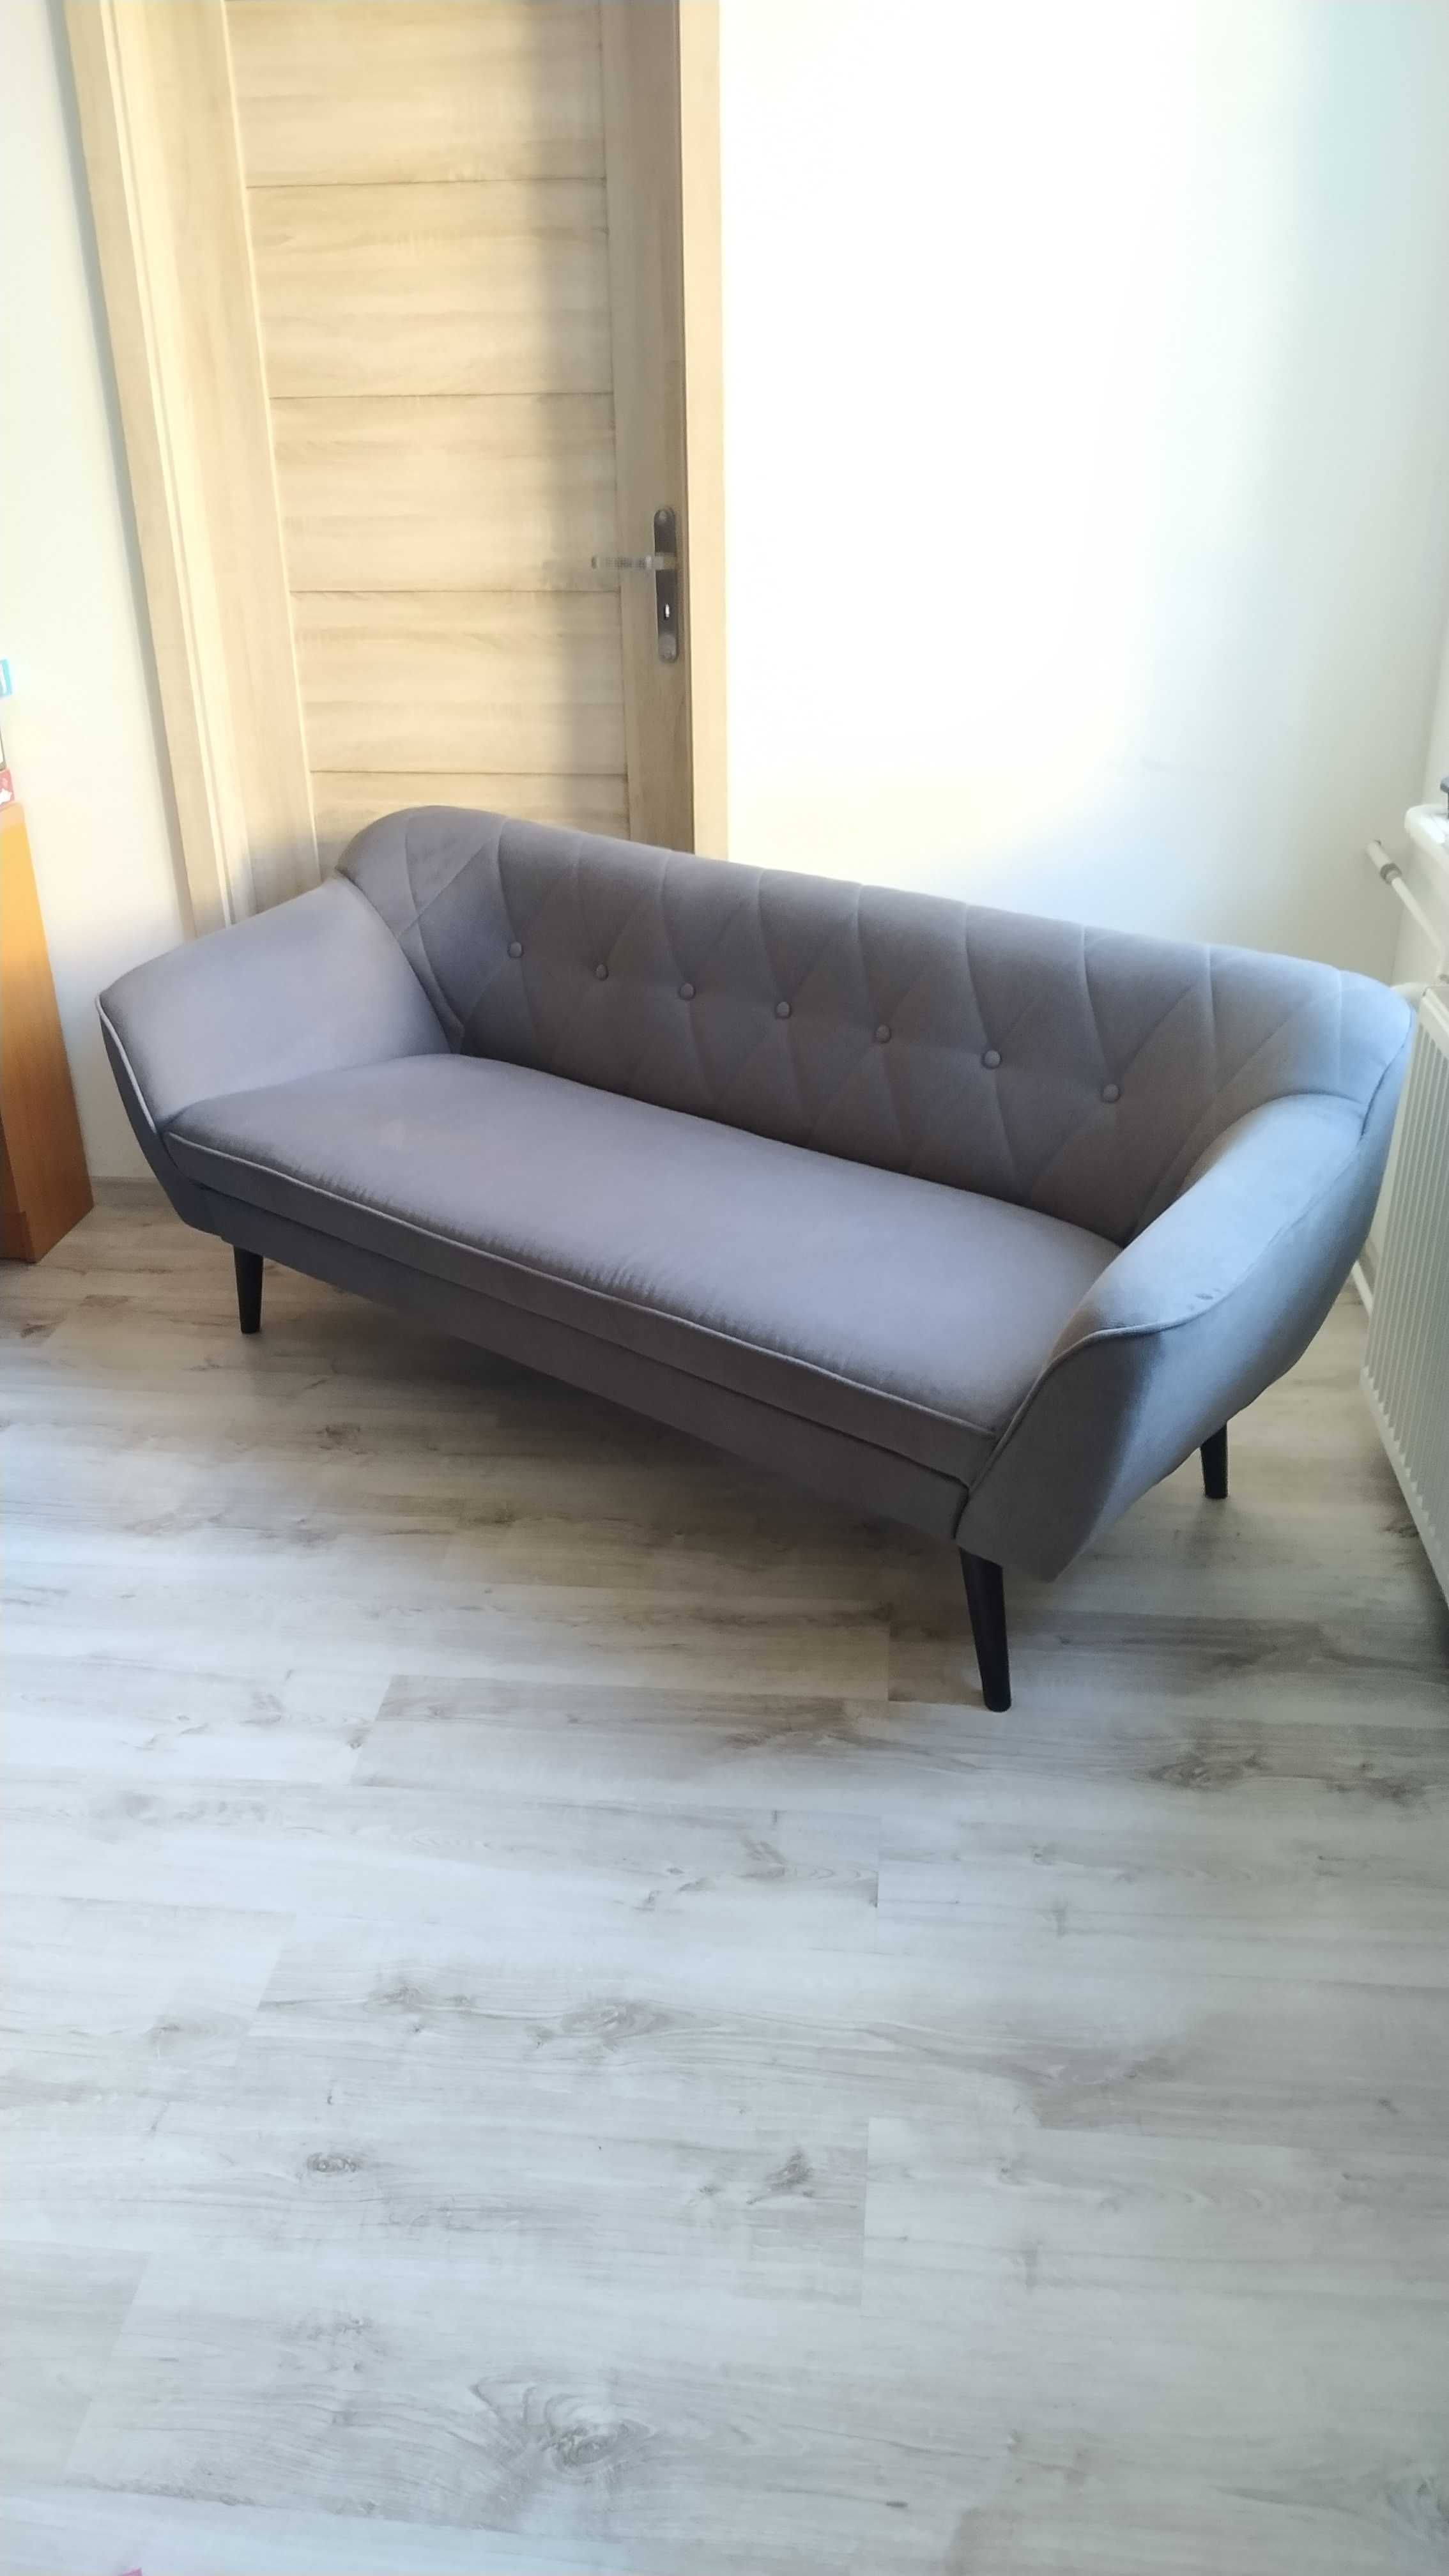 Sofa 3 os. 180 cm w stylu skandynawskim. Stan idealny